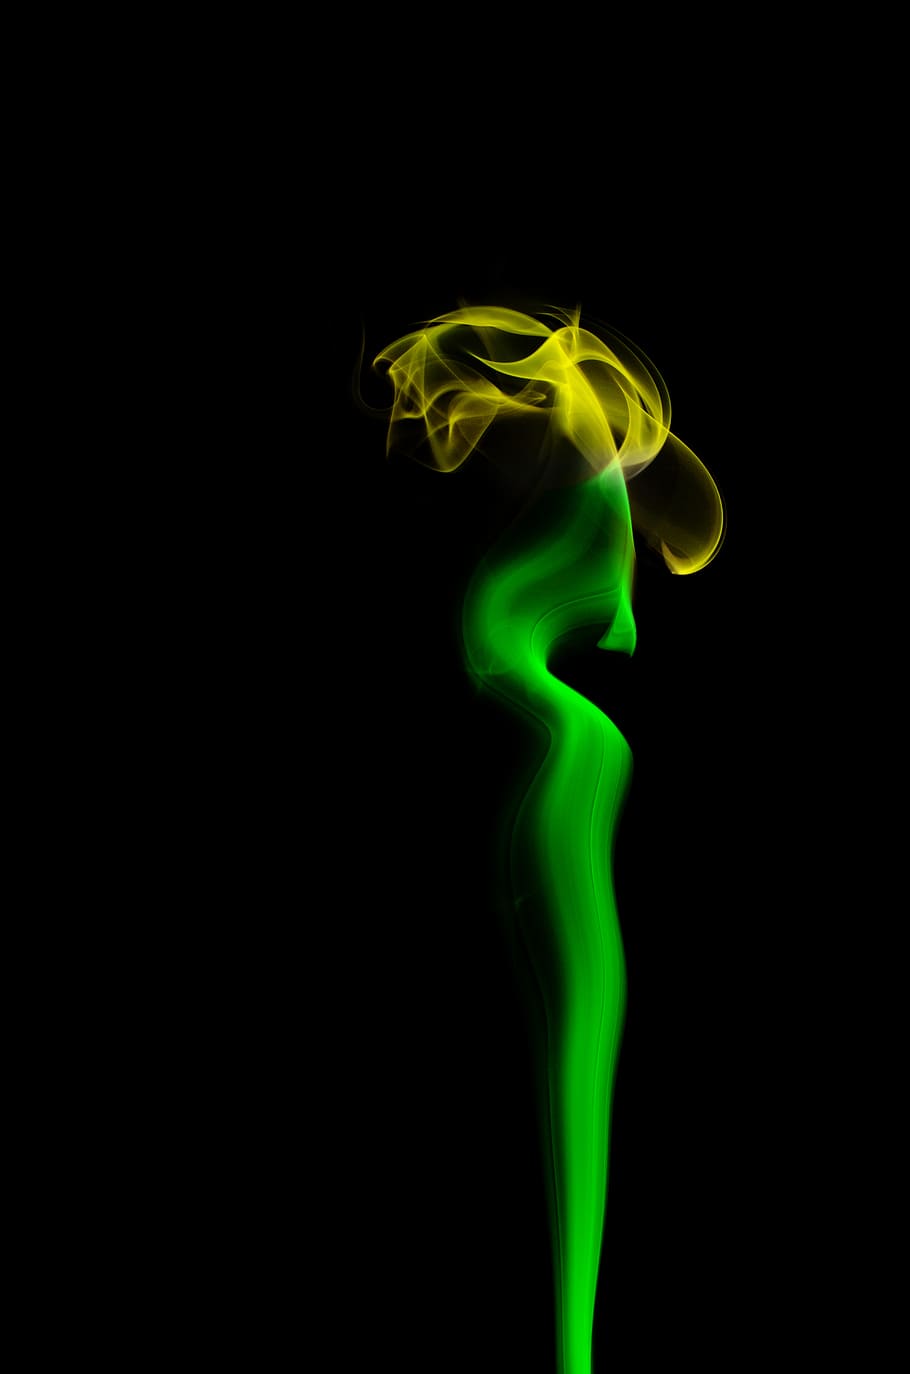 Fumaça, Flor, fumaça verde e amarela, fundo preto, tiro do estúdio, cor verde, dentro de casa, movimento, fumaça - estrutura física, ninguém